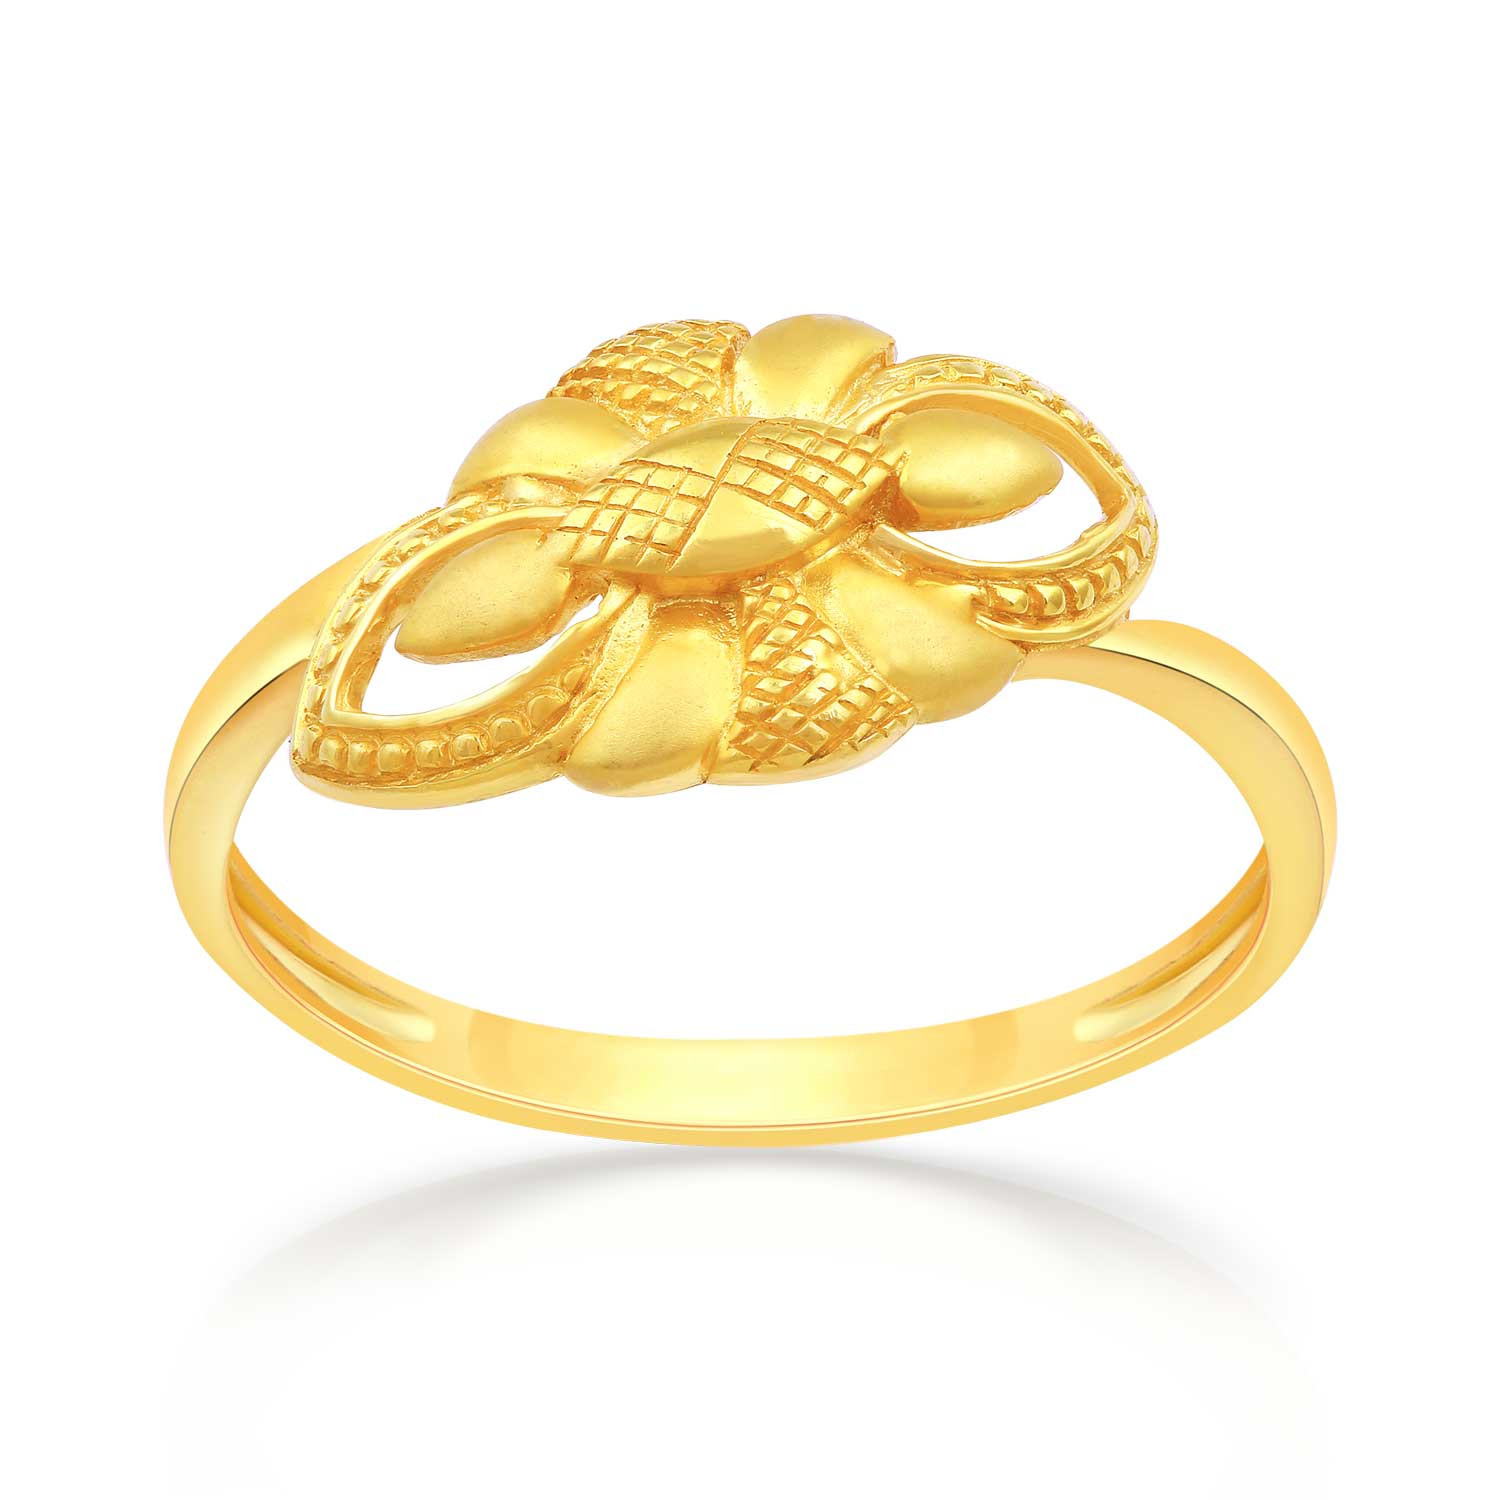 Buy Malabar Gold Ring MHAAAAADMFEI for Women Online | Malabar Gold ...